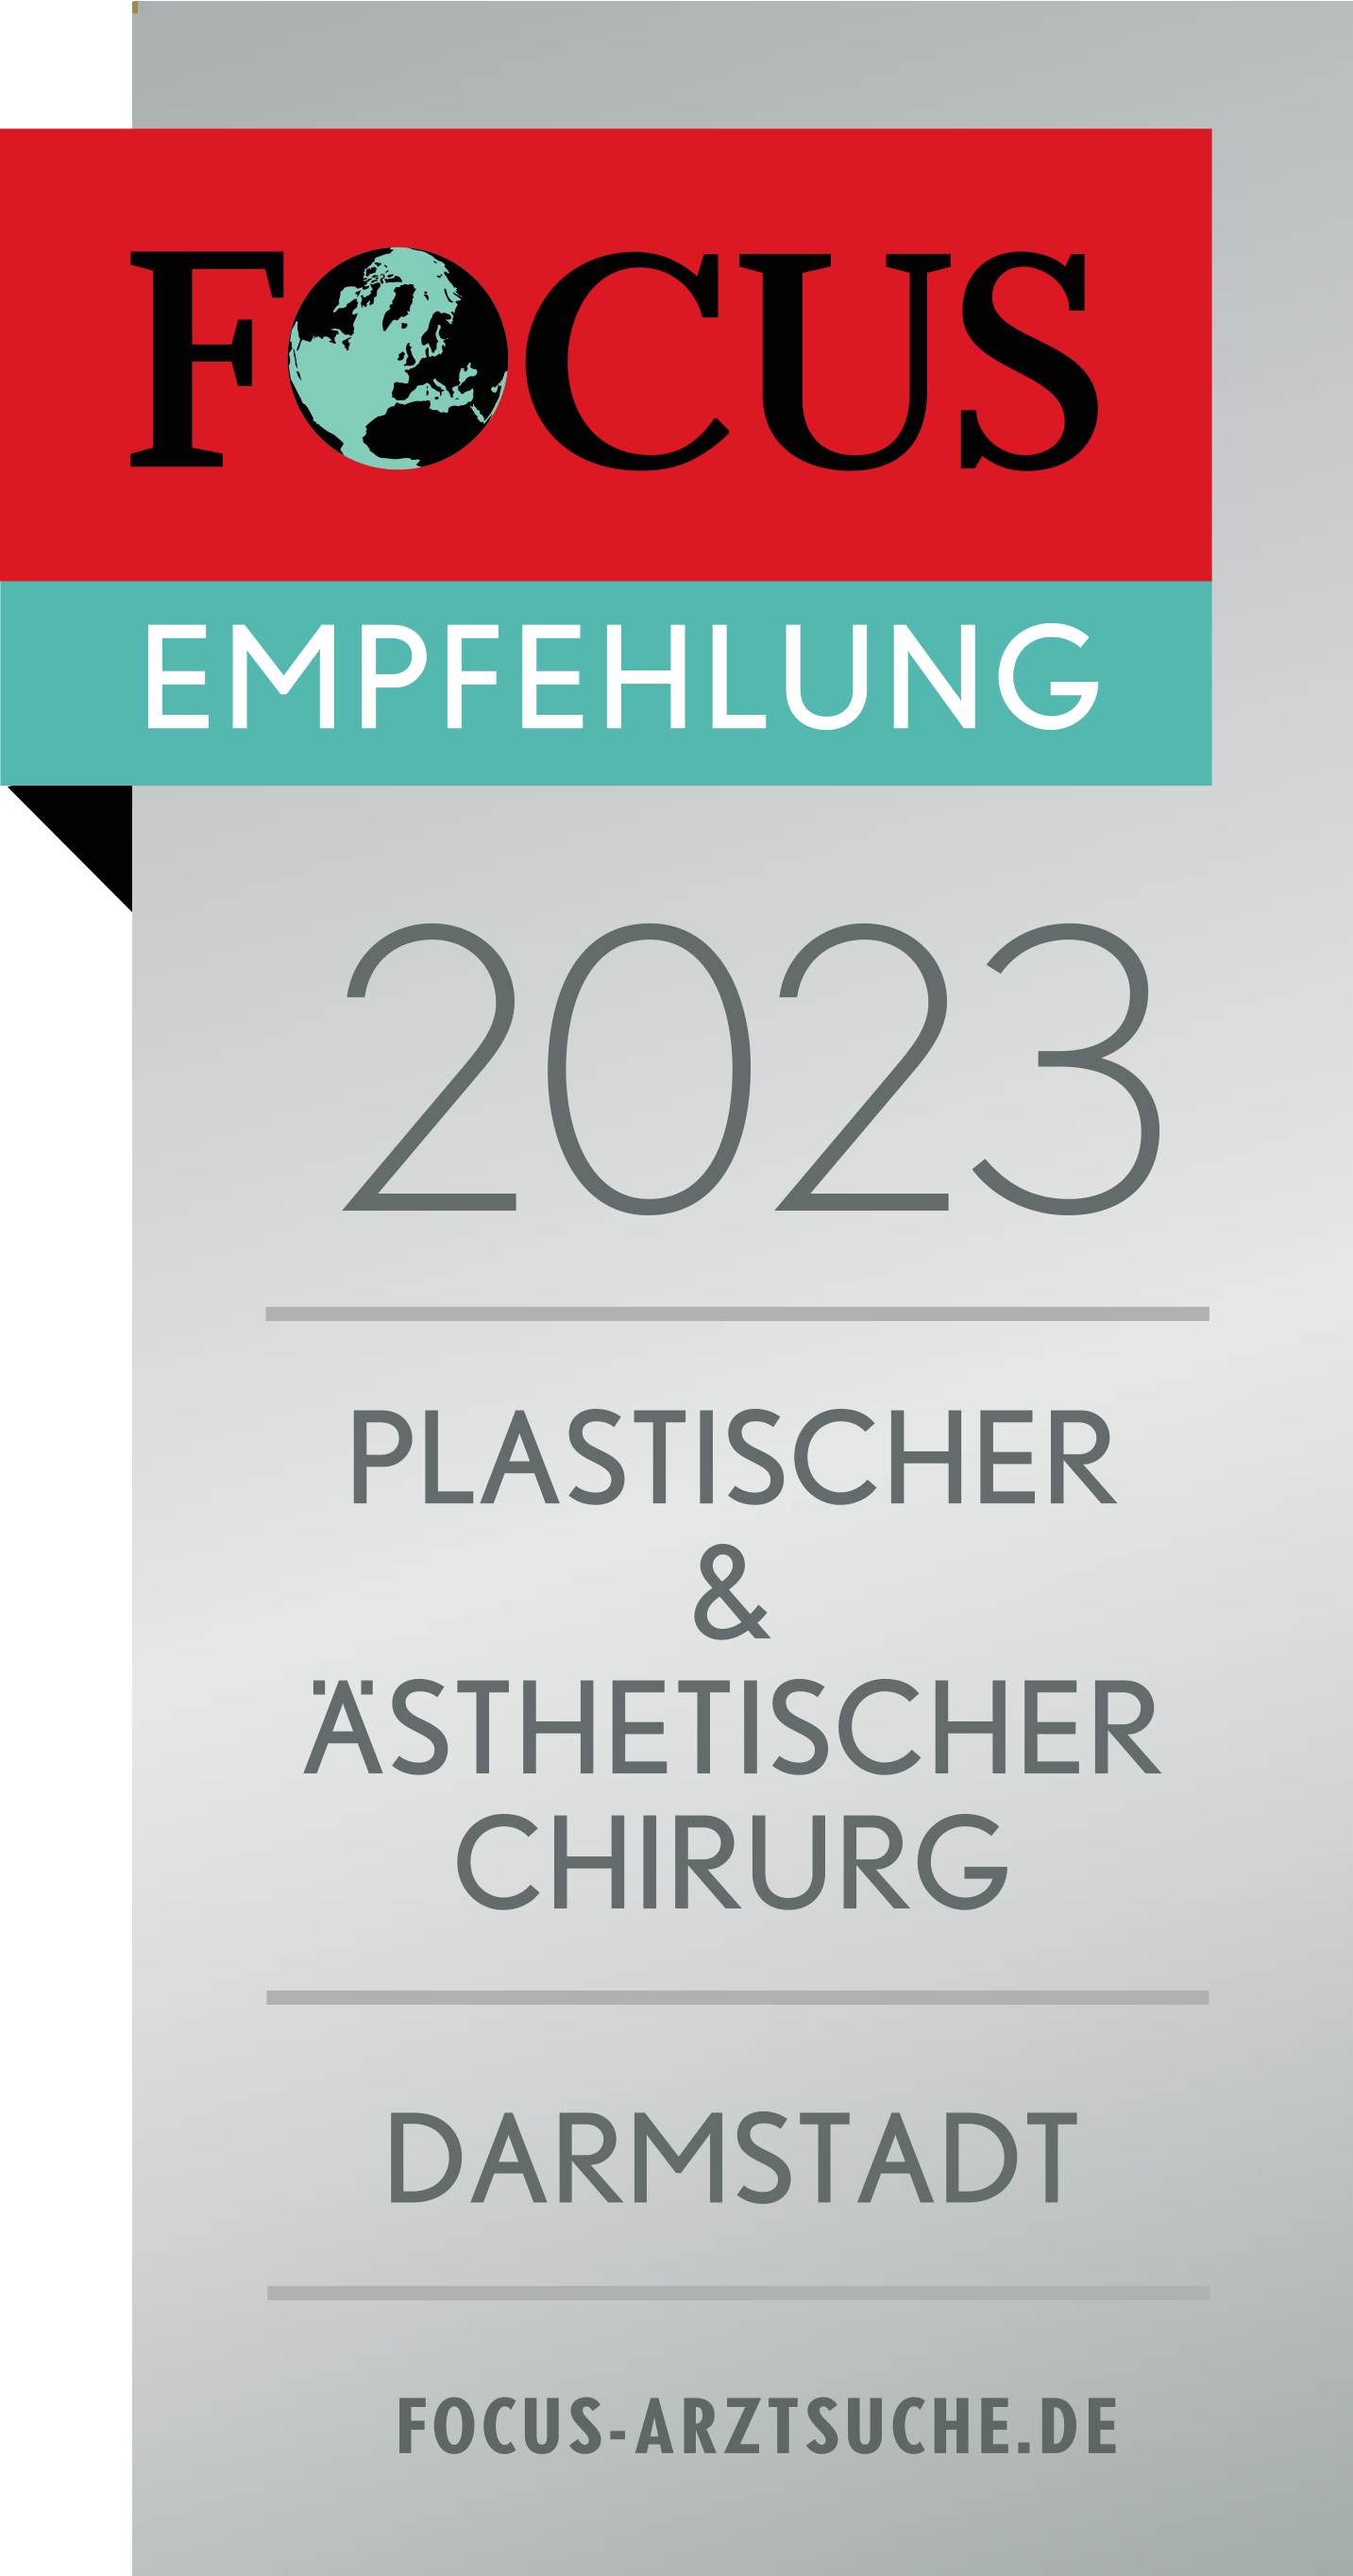 Focus Empfehlung 2023 - Plastischer & Ästhetischer Chirurg - Darmstadt